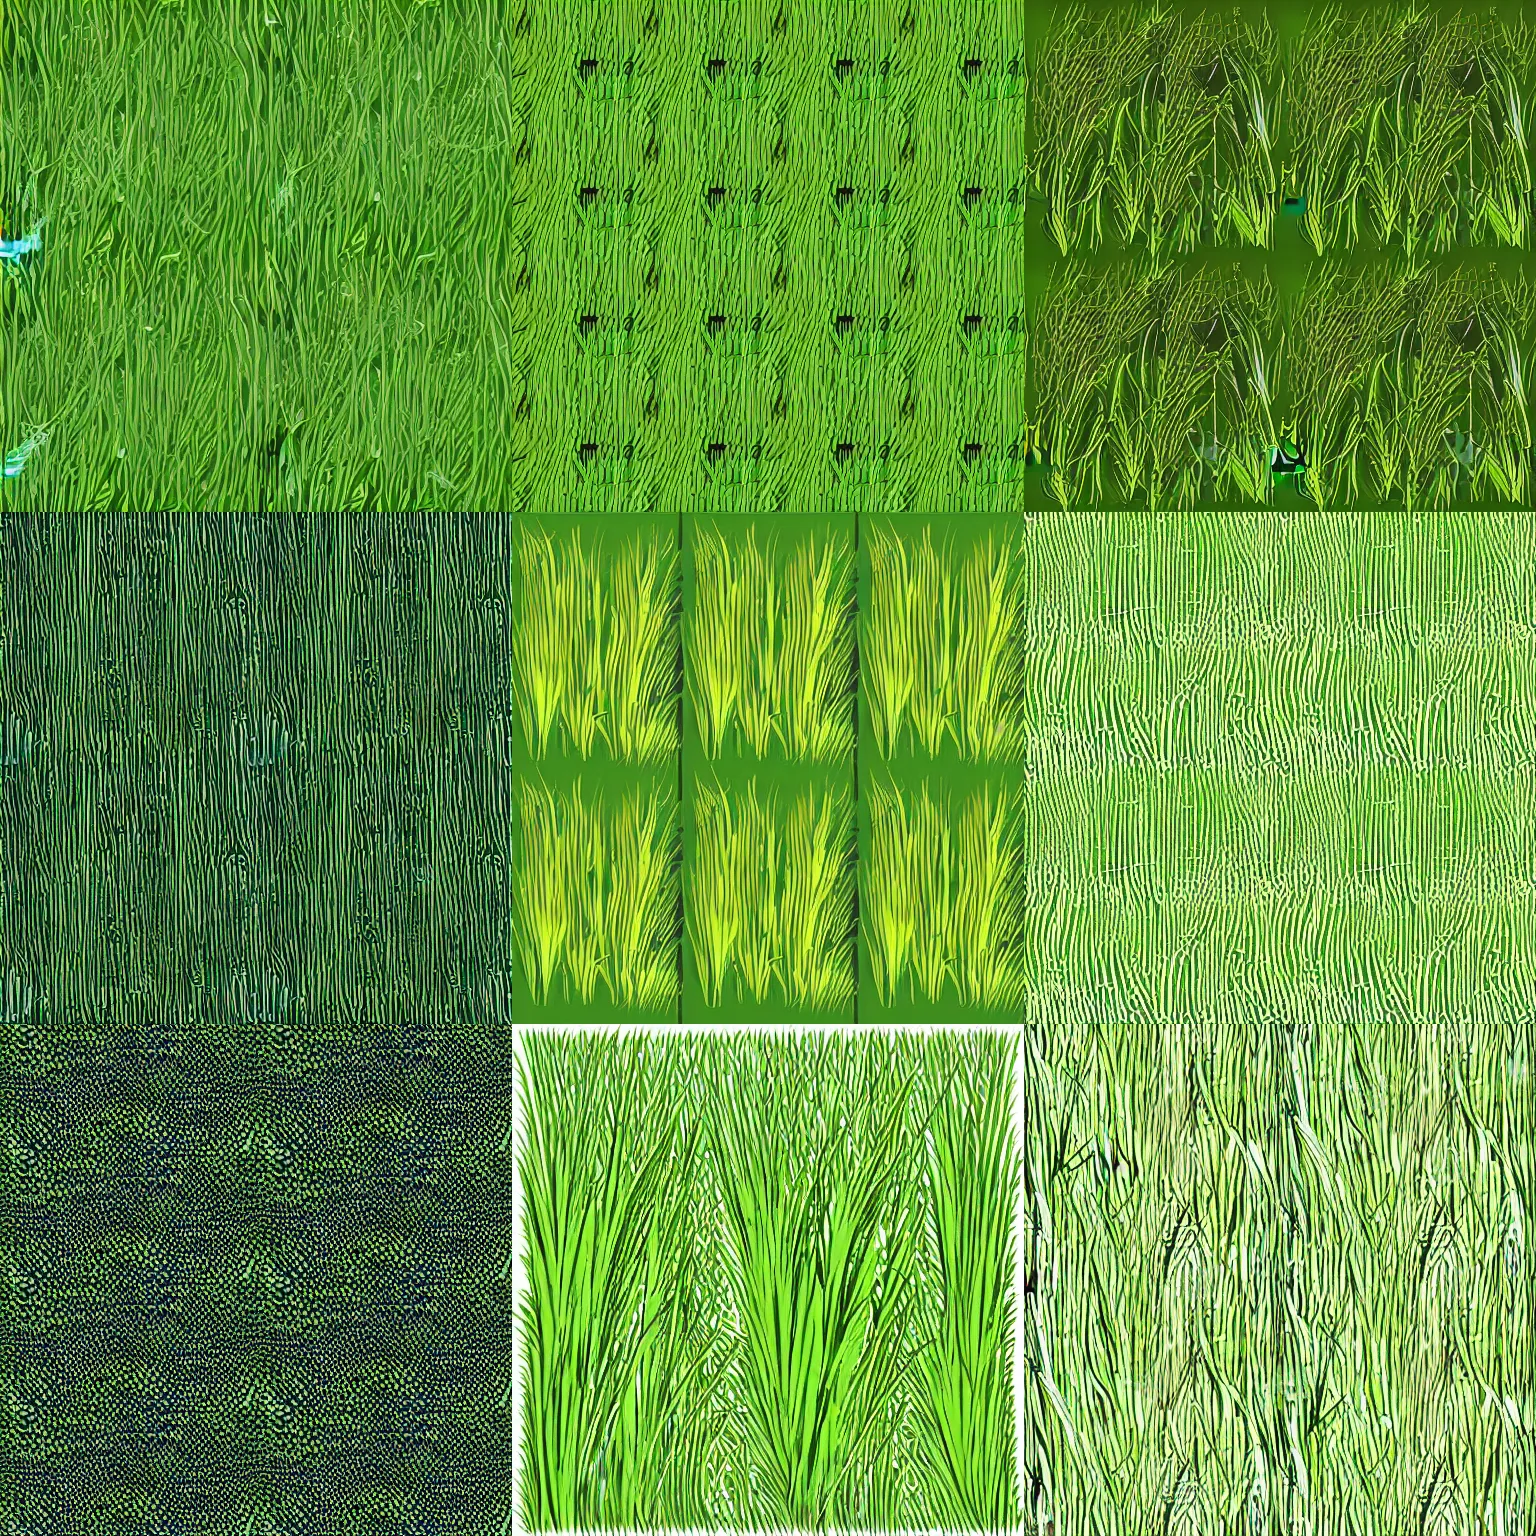 Prompt: cartoon grass texture material, vector art